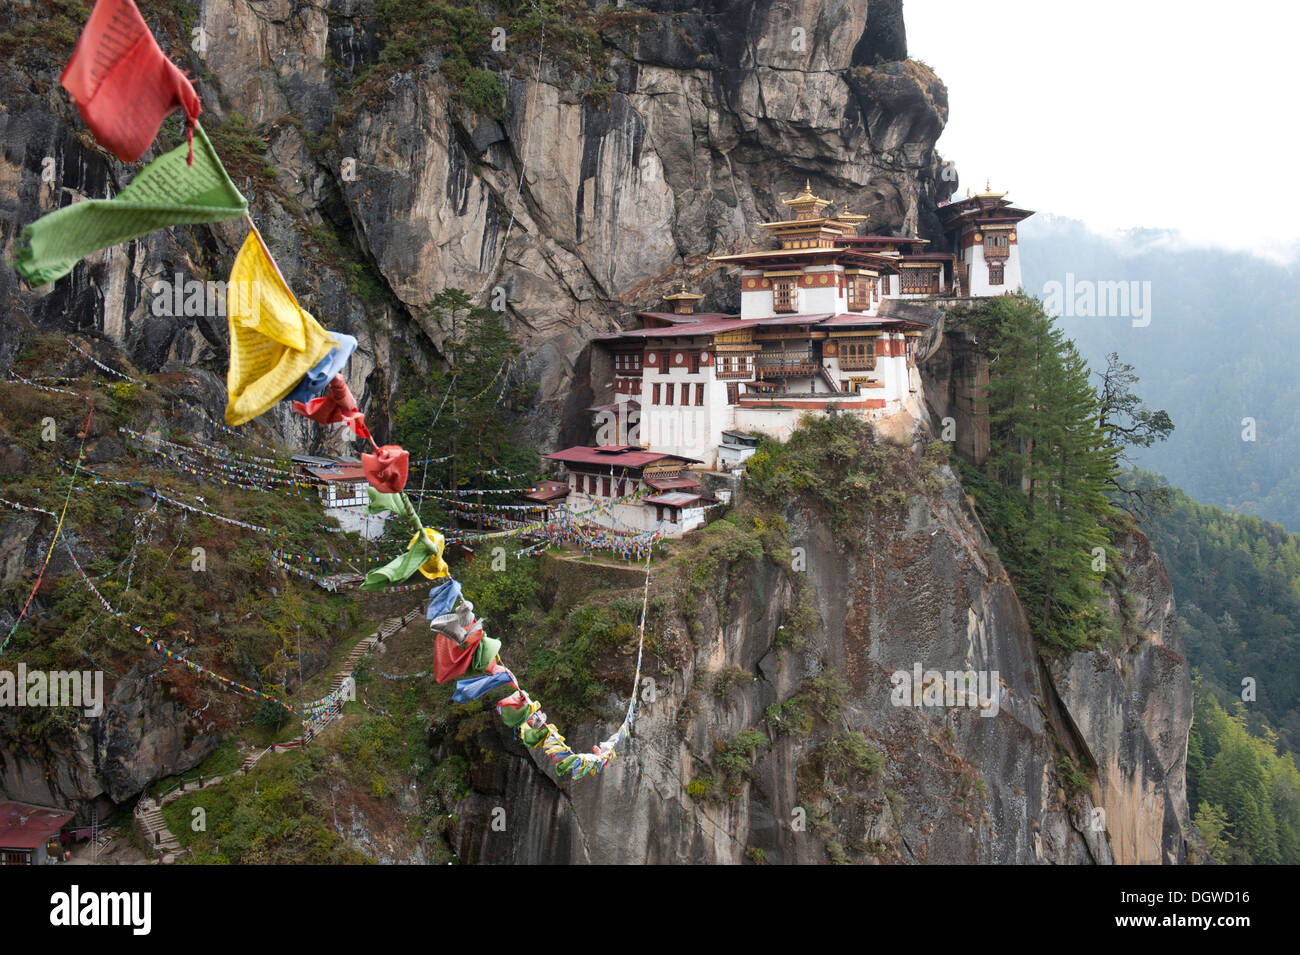 Le bouddhisme tibétain, le monastère de Taktsang Palphug sur un rocher, également connu sous le nom de Tiger's Nest, près de Paro, Bhoutan, Himalaya Banque D'Images